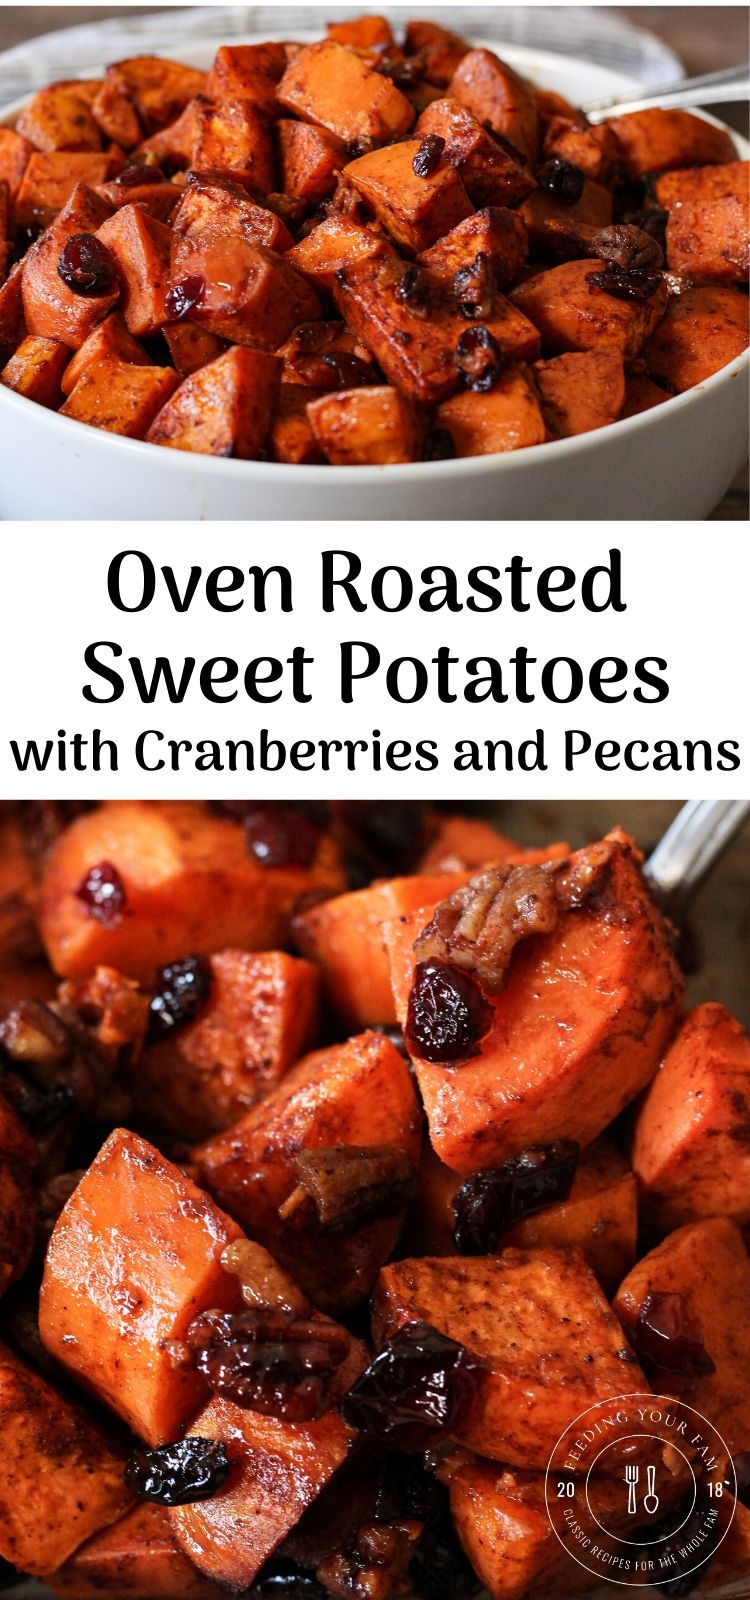 roasted sweet potatoes image